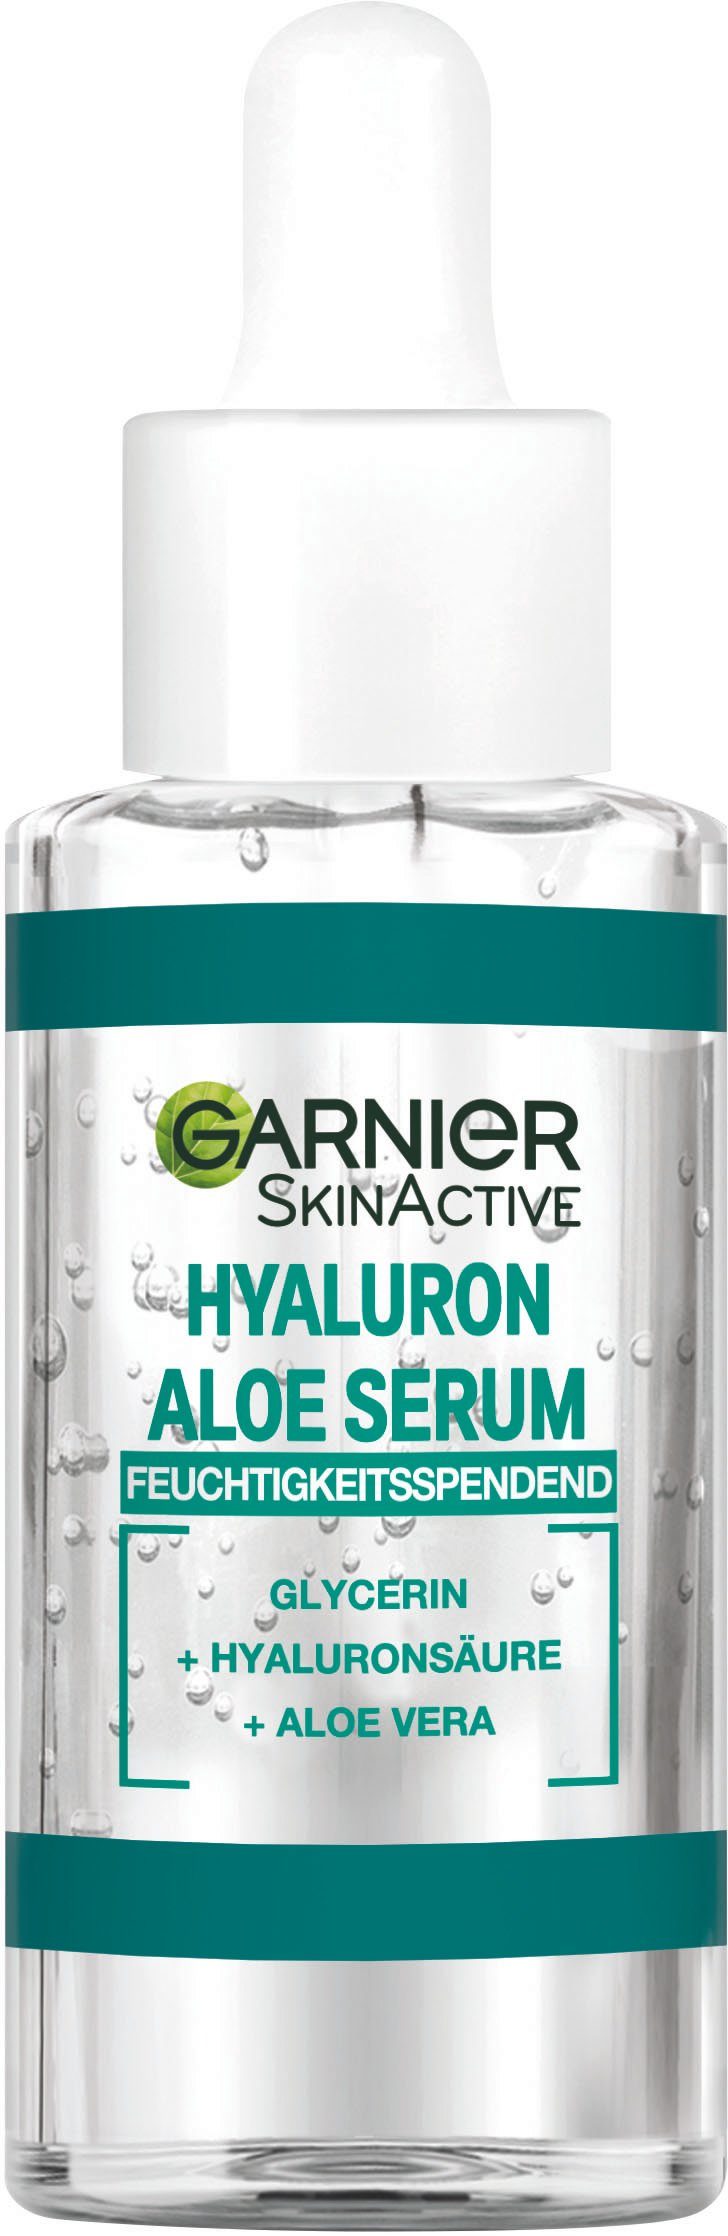 Gesichtsserum Serum GARNIER SkinActive Hyaluron Aloe